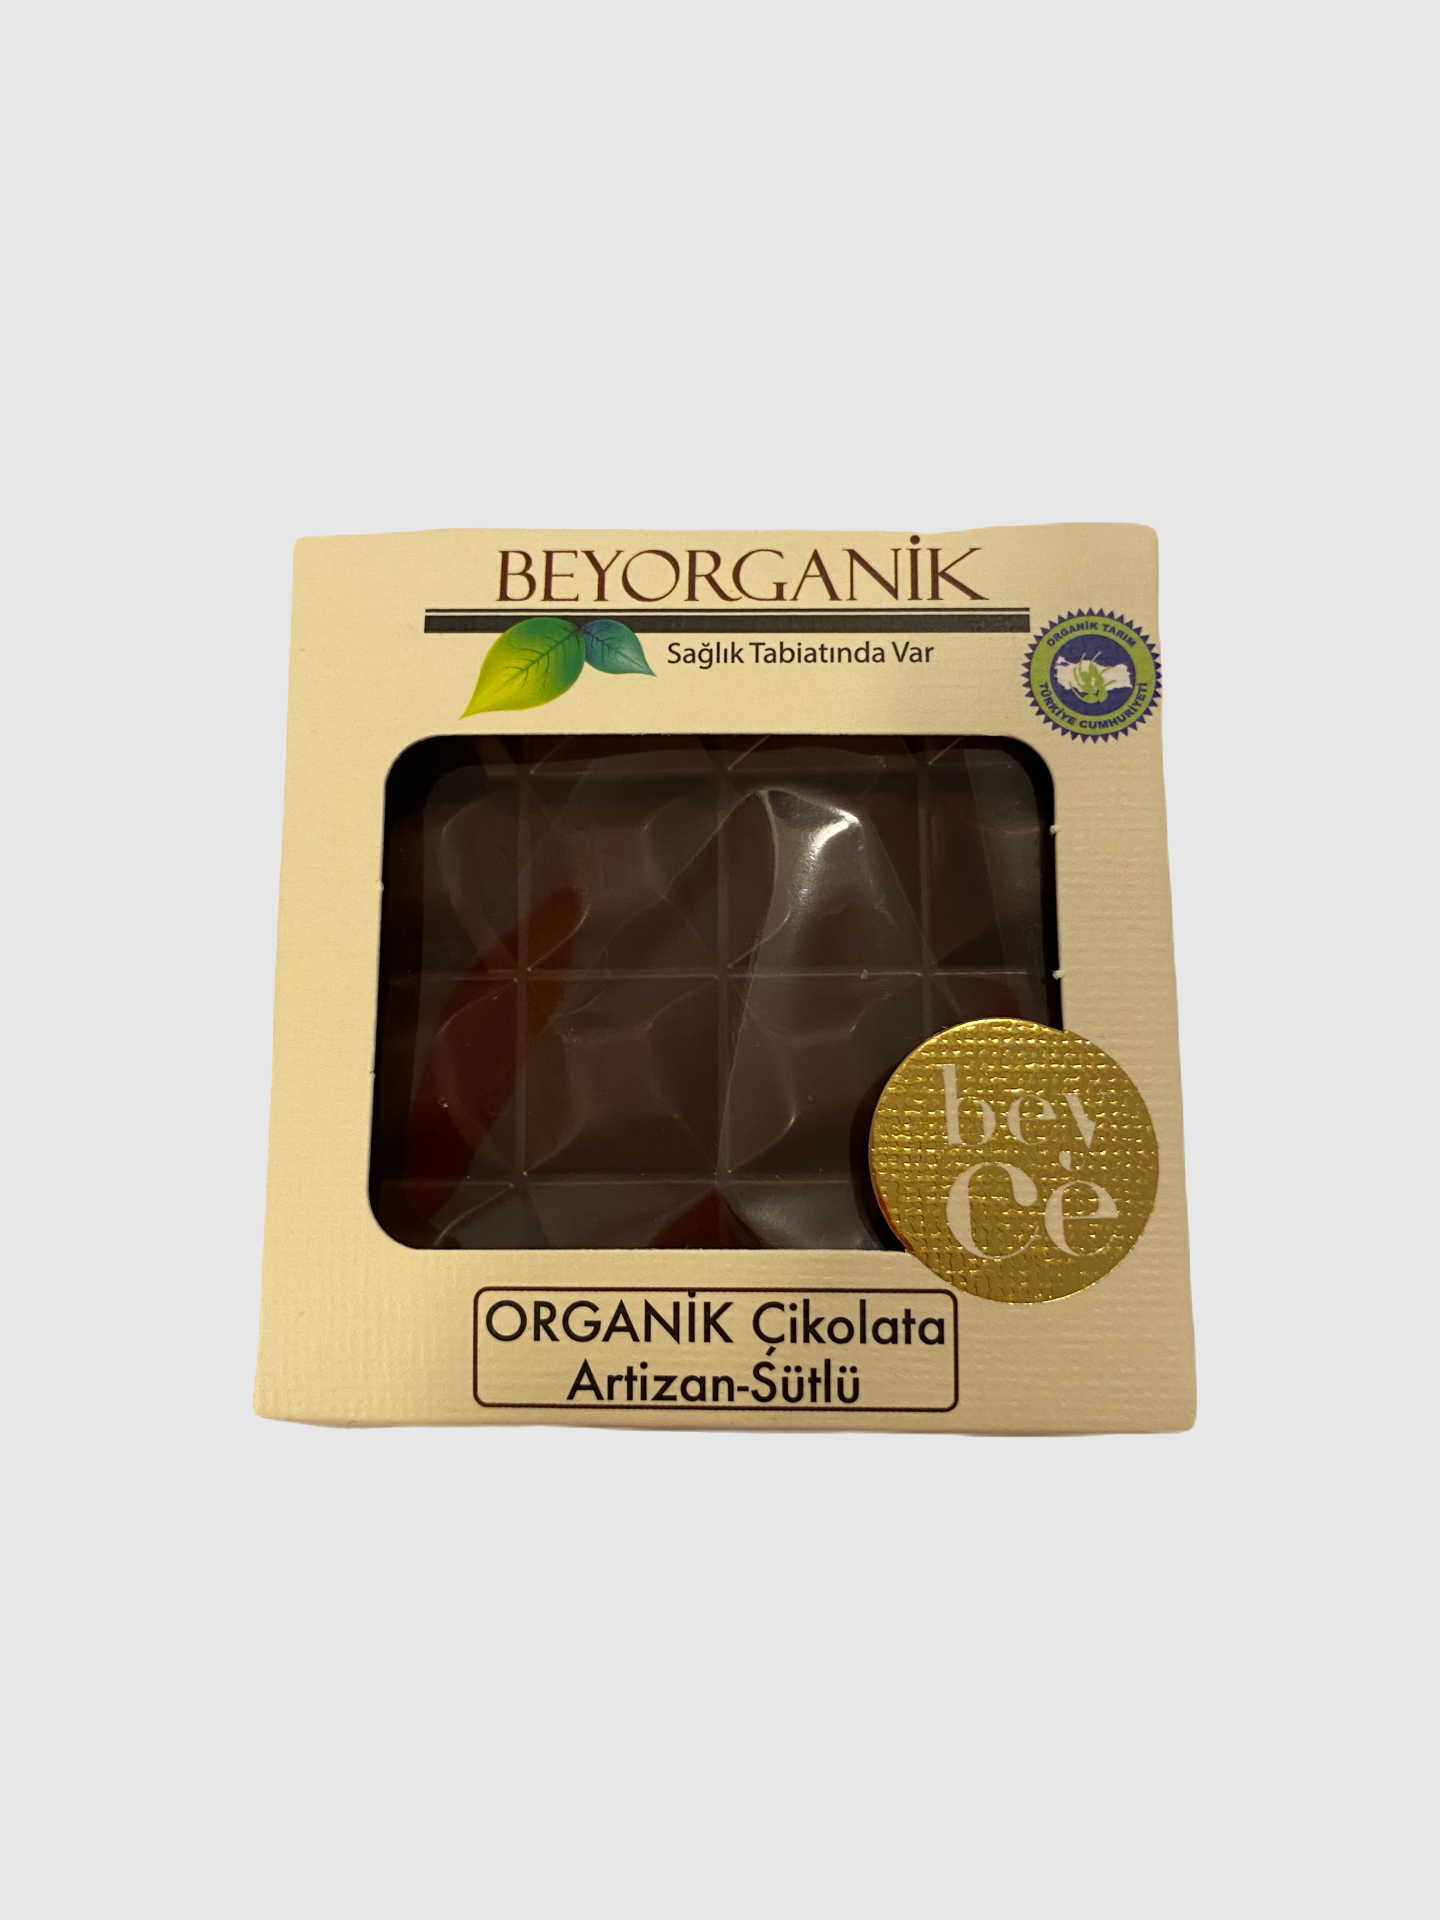 Beyorganik Çikolata Artizan-Sütlü 40 gr